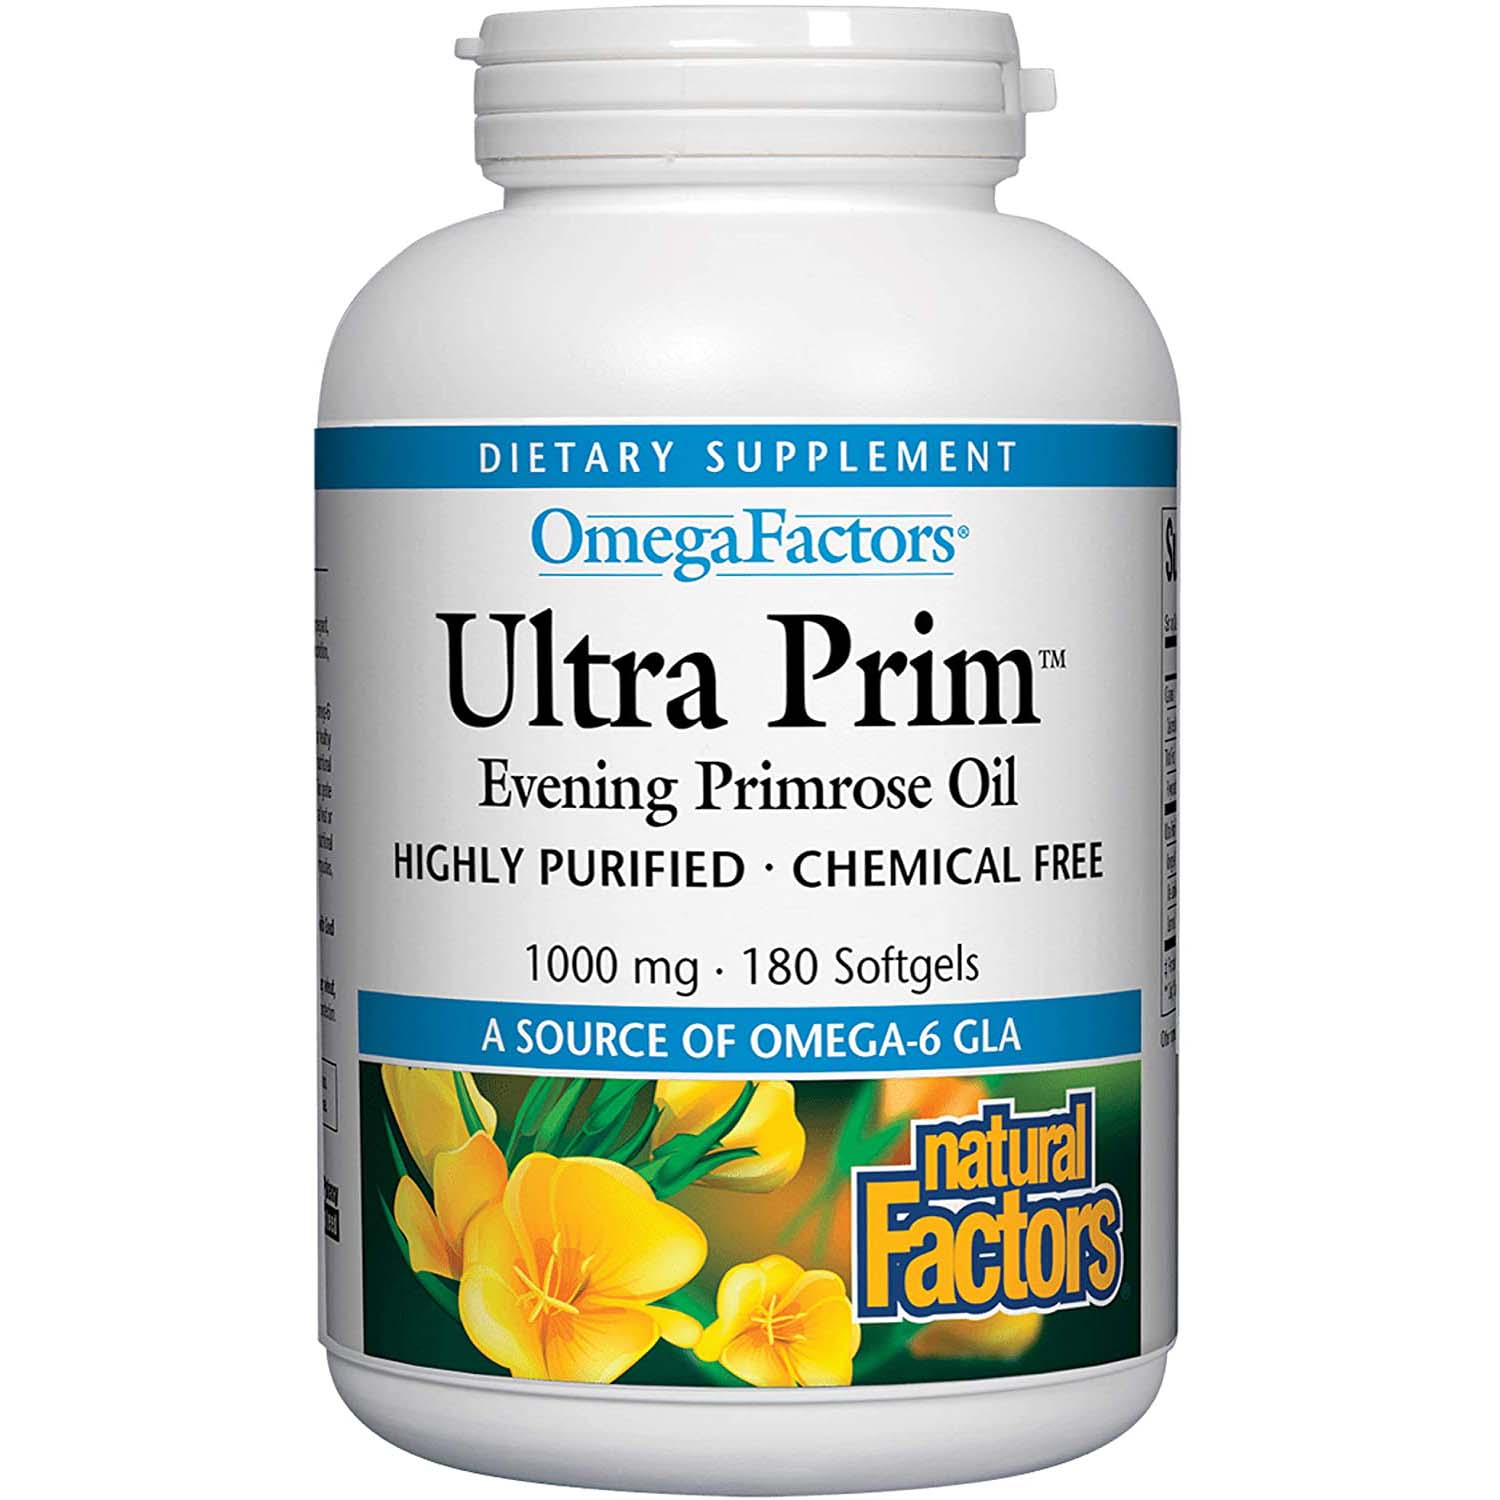 Natural Factors Ultra Prim Evening Primrose Oil 180 Softgels 1000 mg